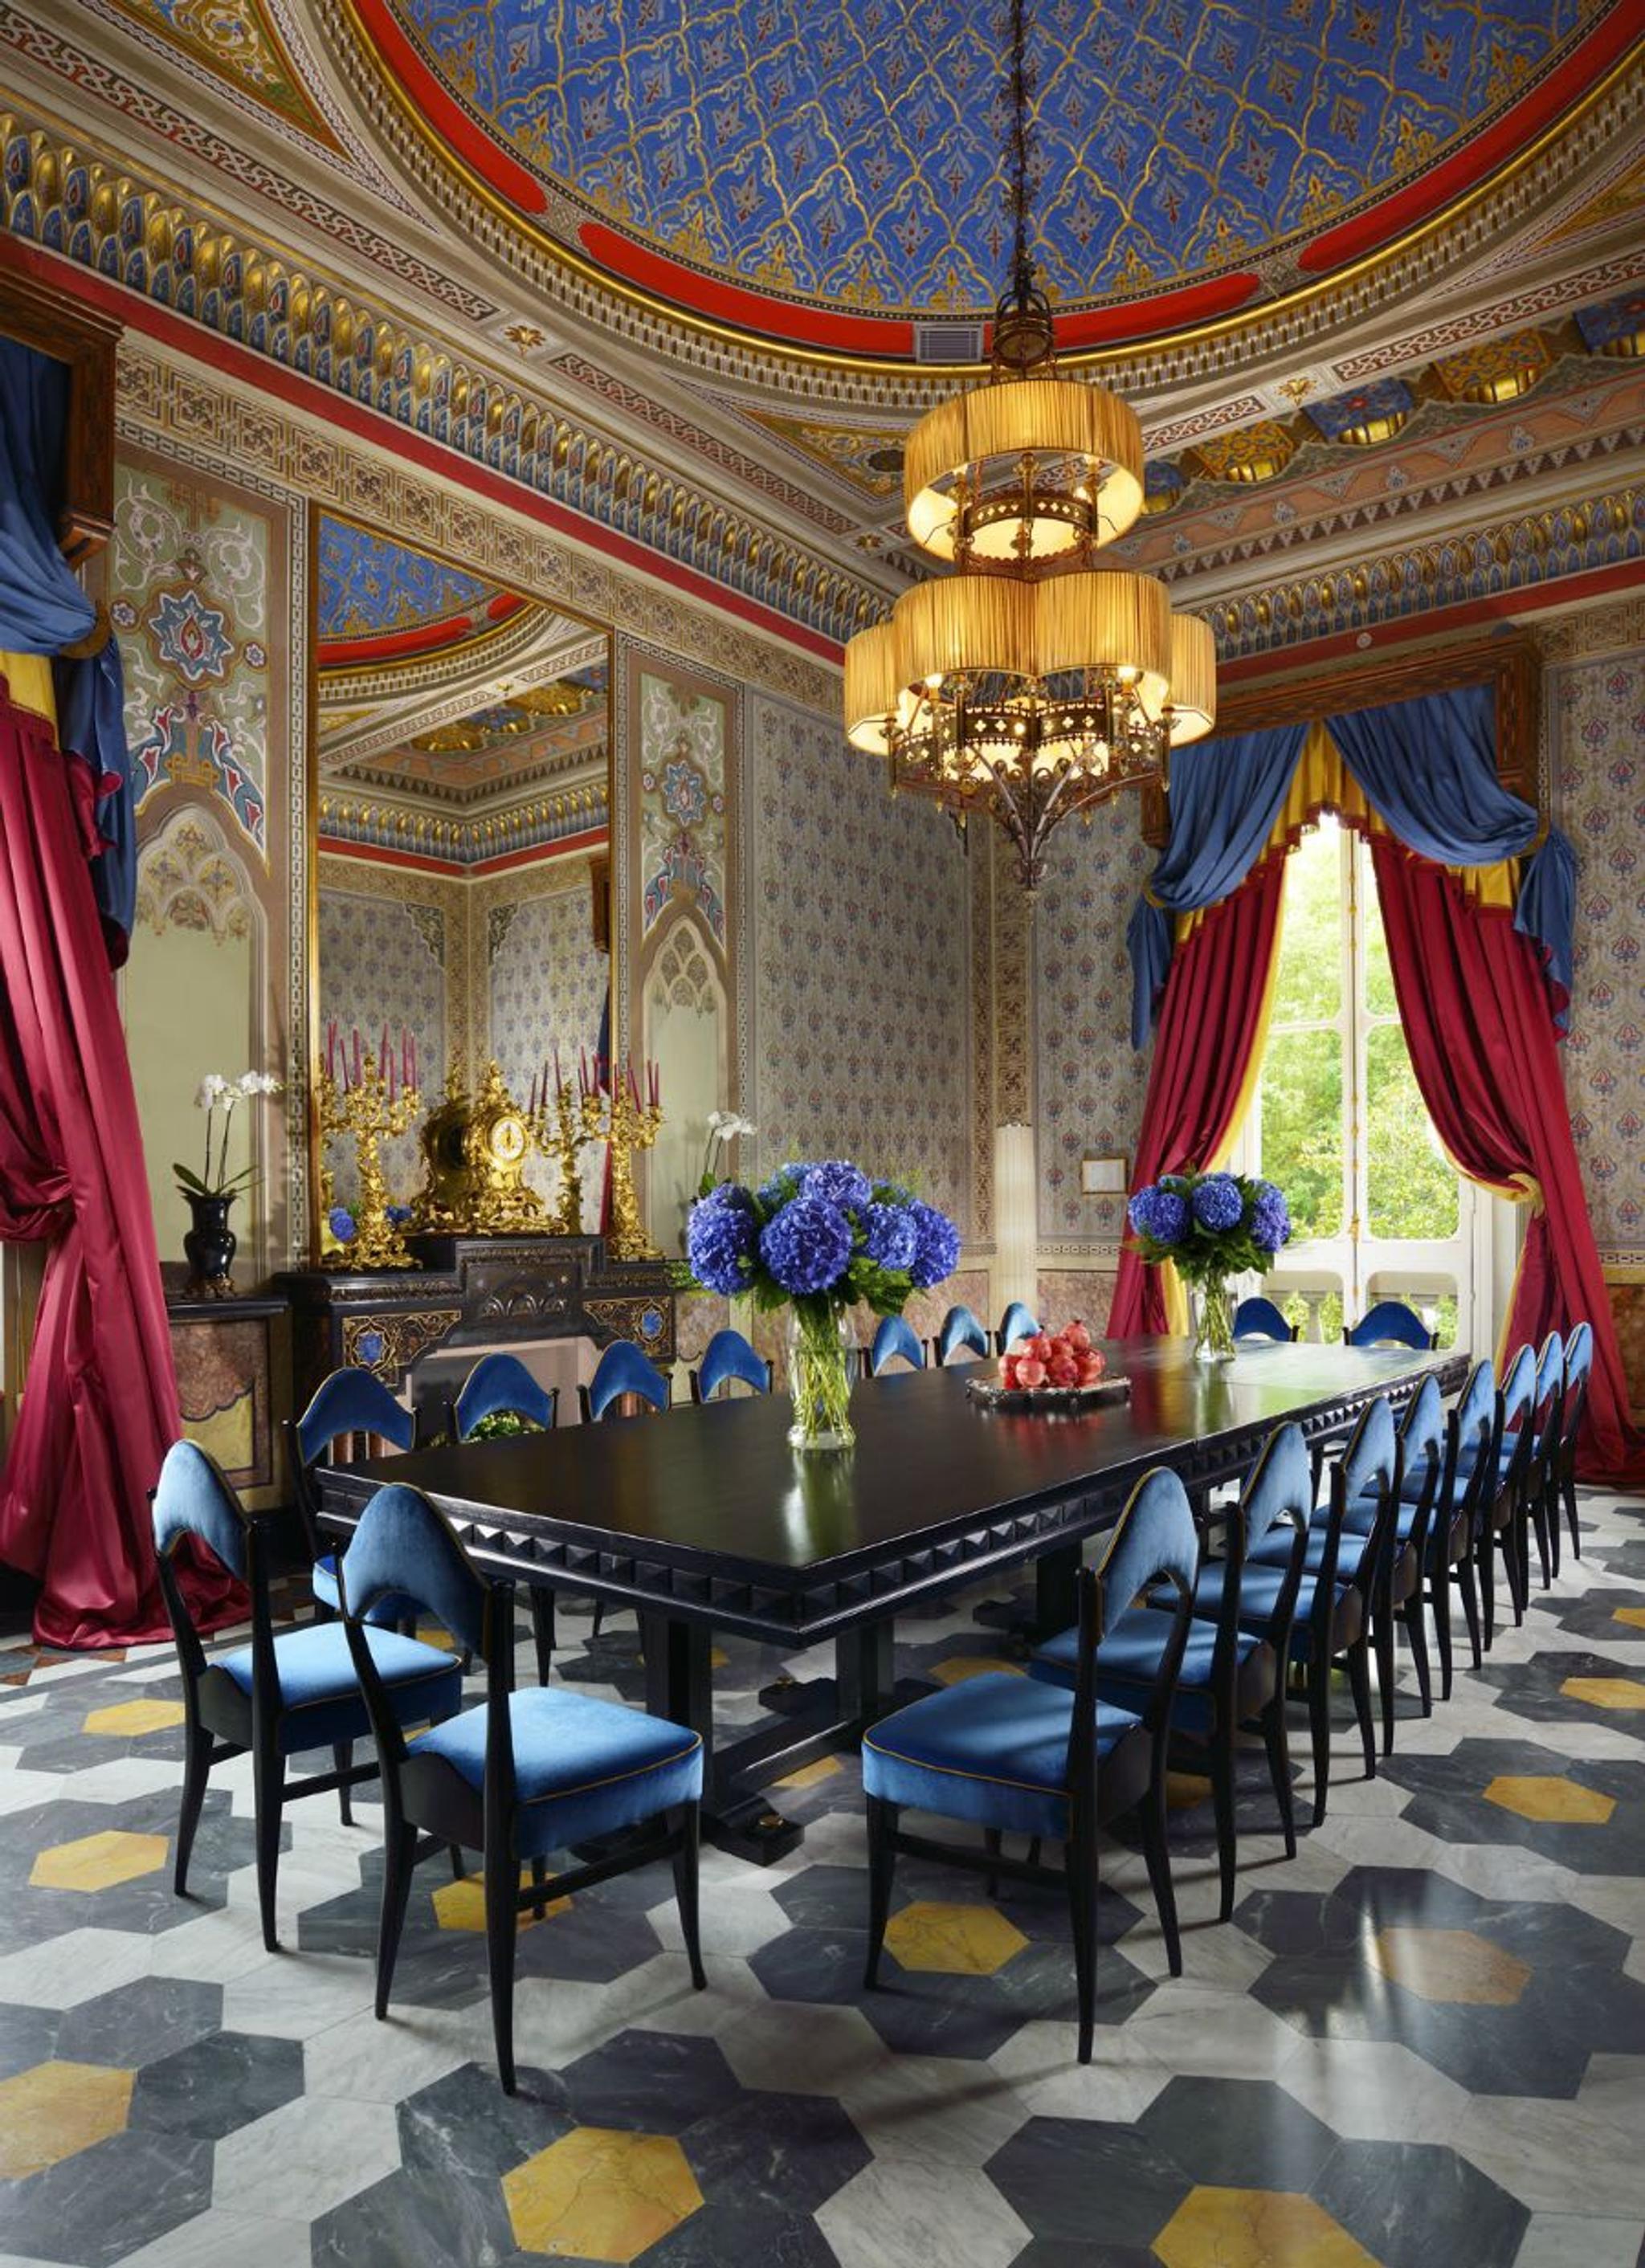 El Salón Regio "Sala Moresca" - Acoge hasta 20 comensales sentados y es el salón perfecto para reuniones y cenas formales rodeadas de una preciosa atmósfera barroca.